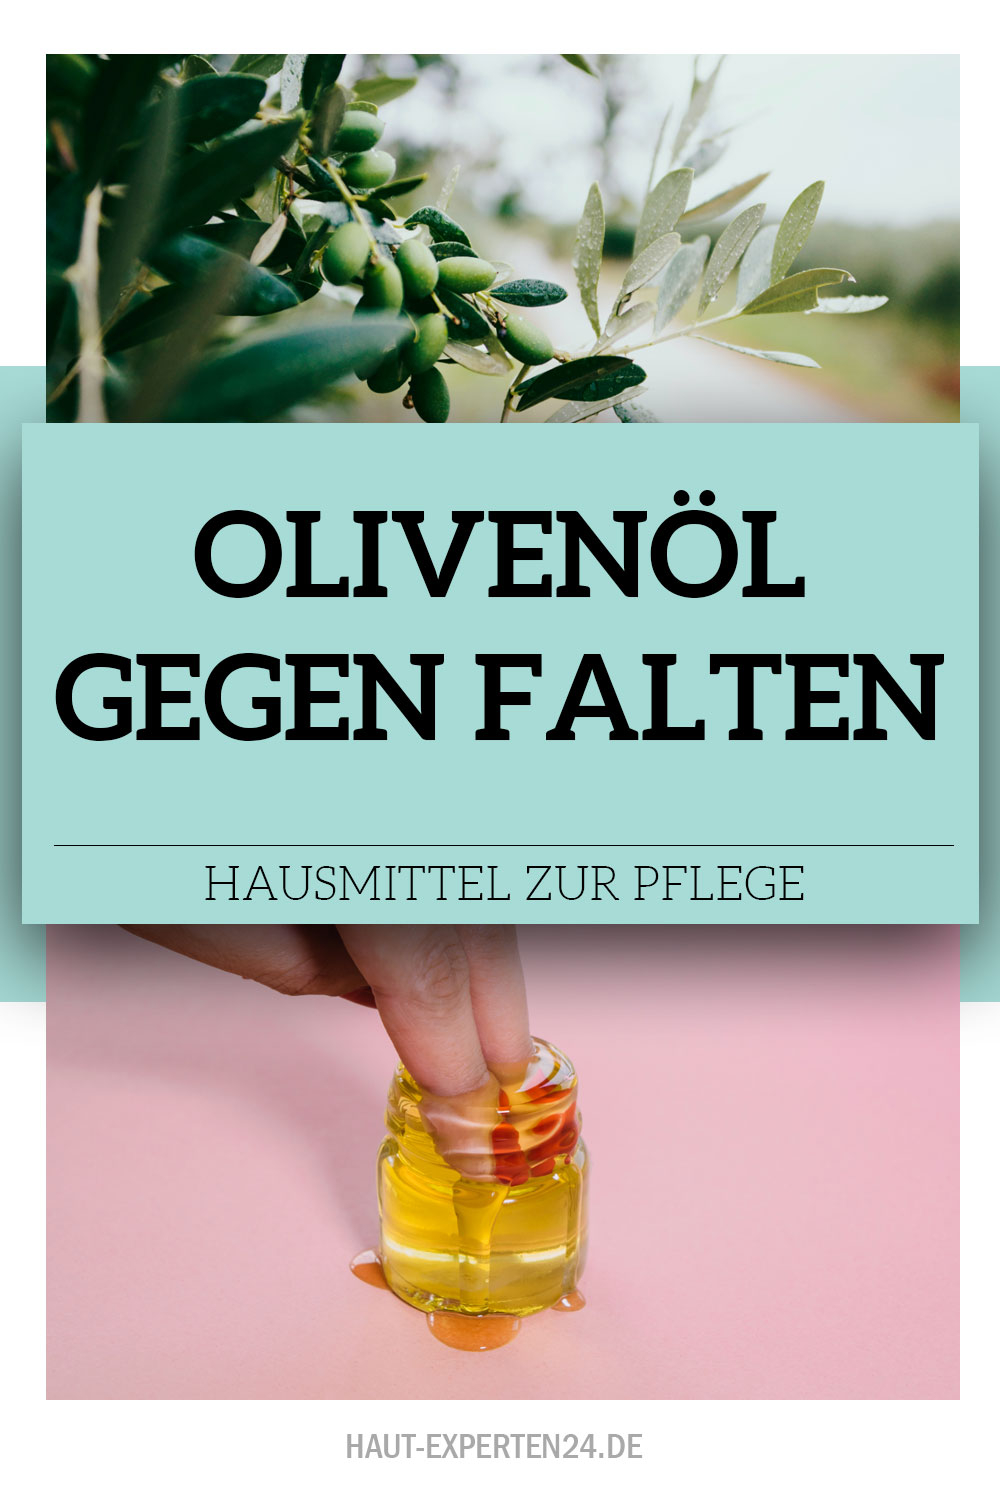 Olivenöl gegen Falten als Kompresse